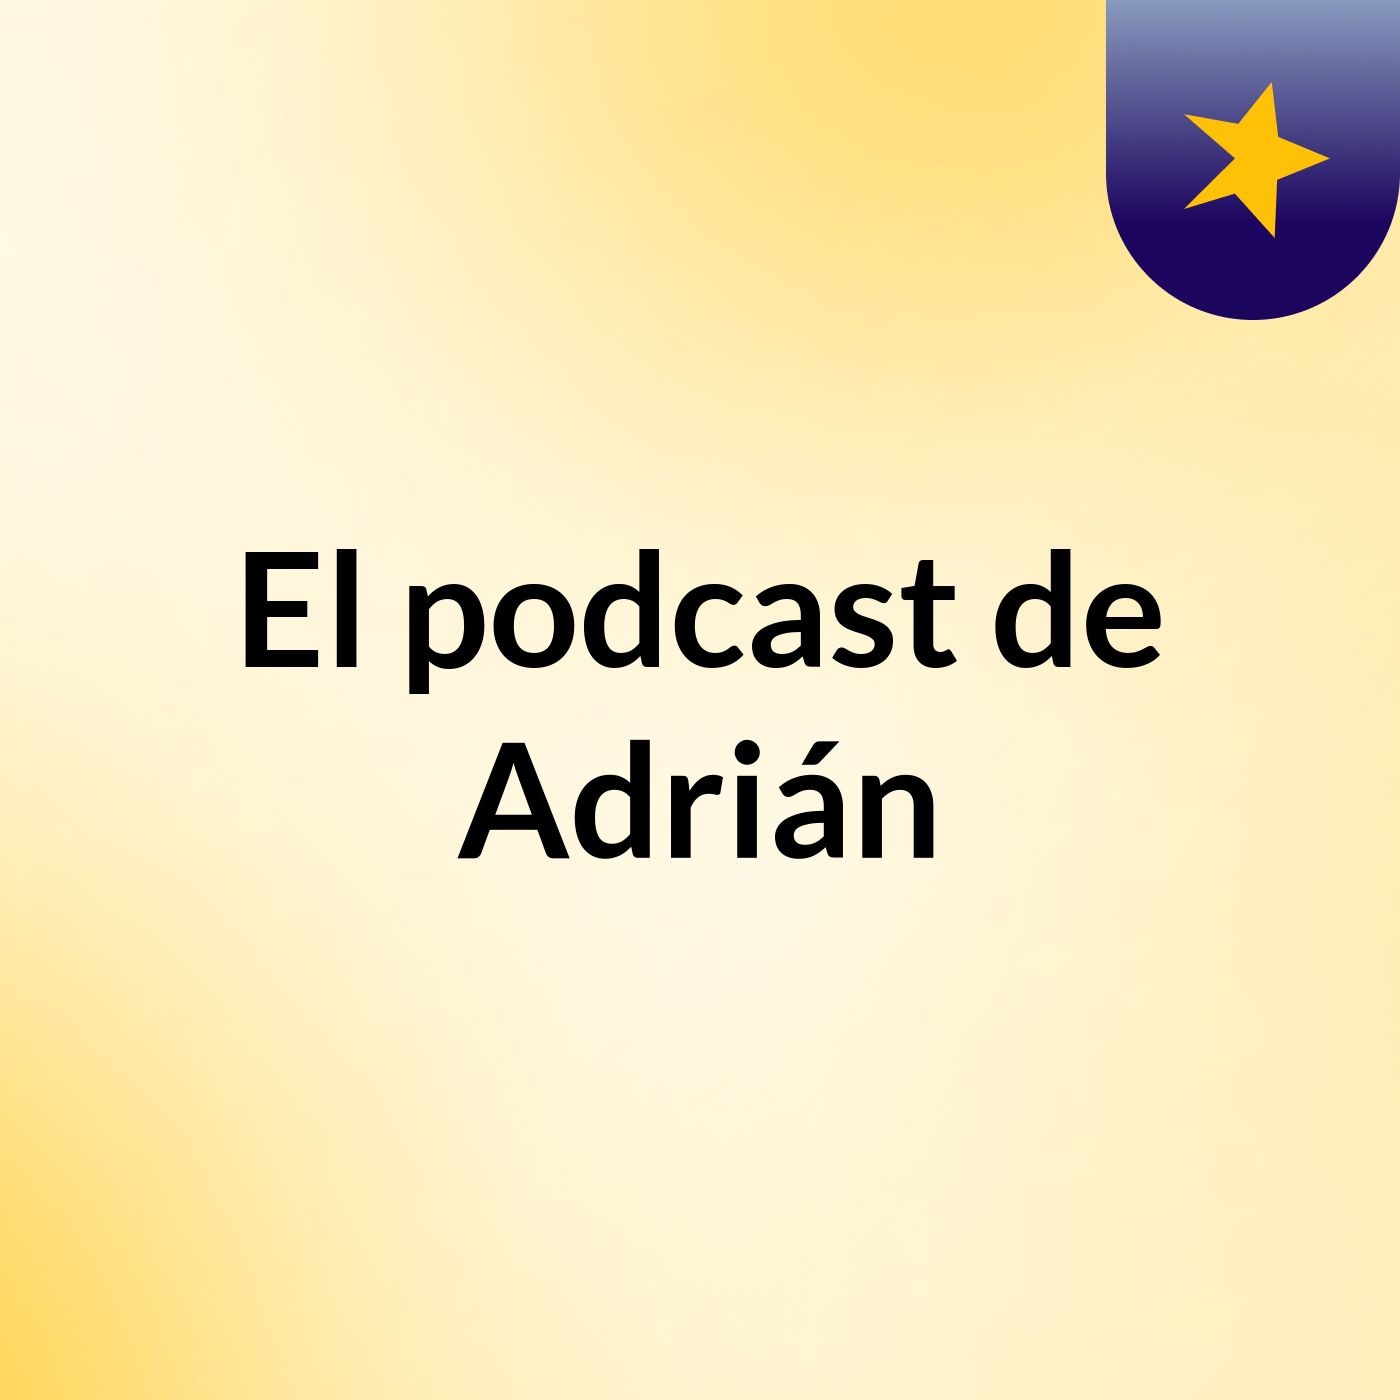 Episodio 5 - El podcast de Adrián